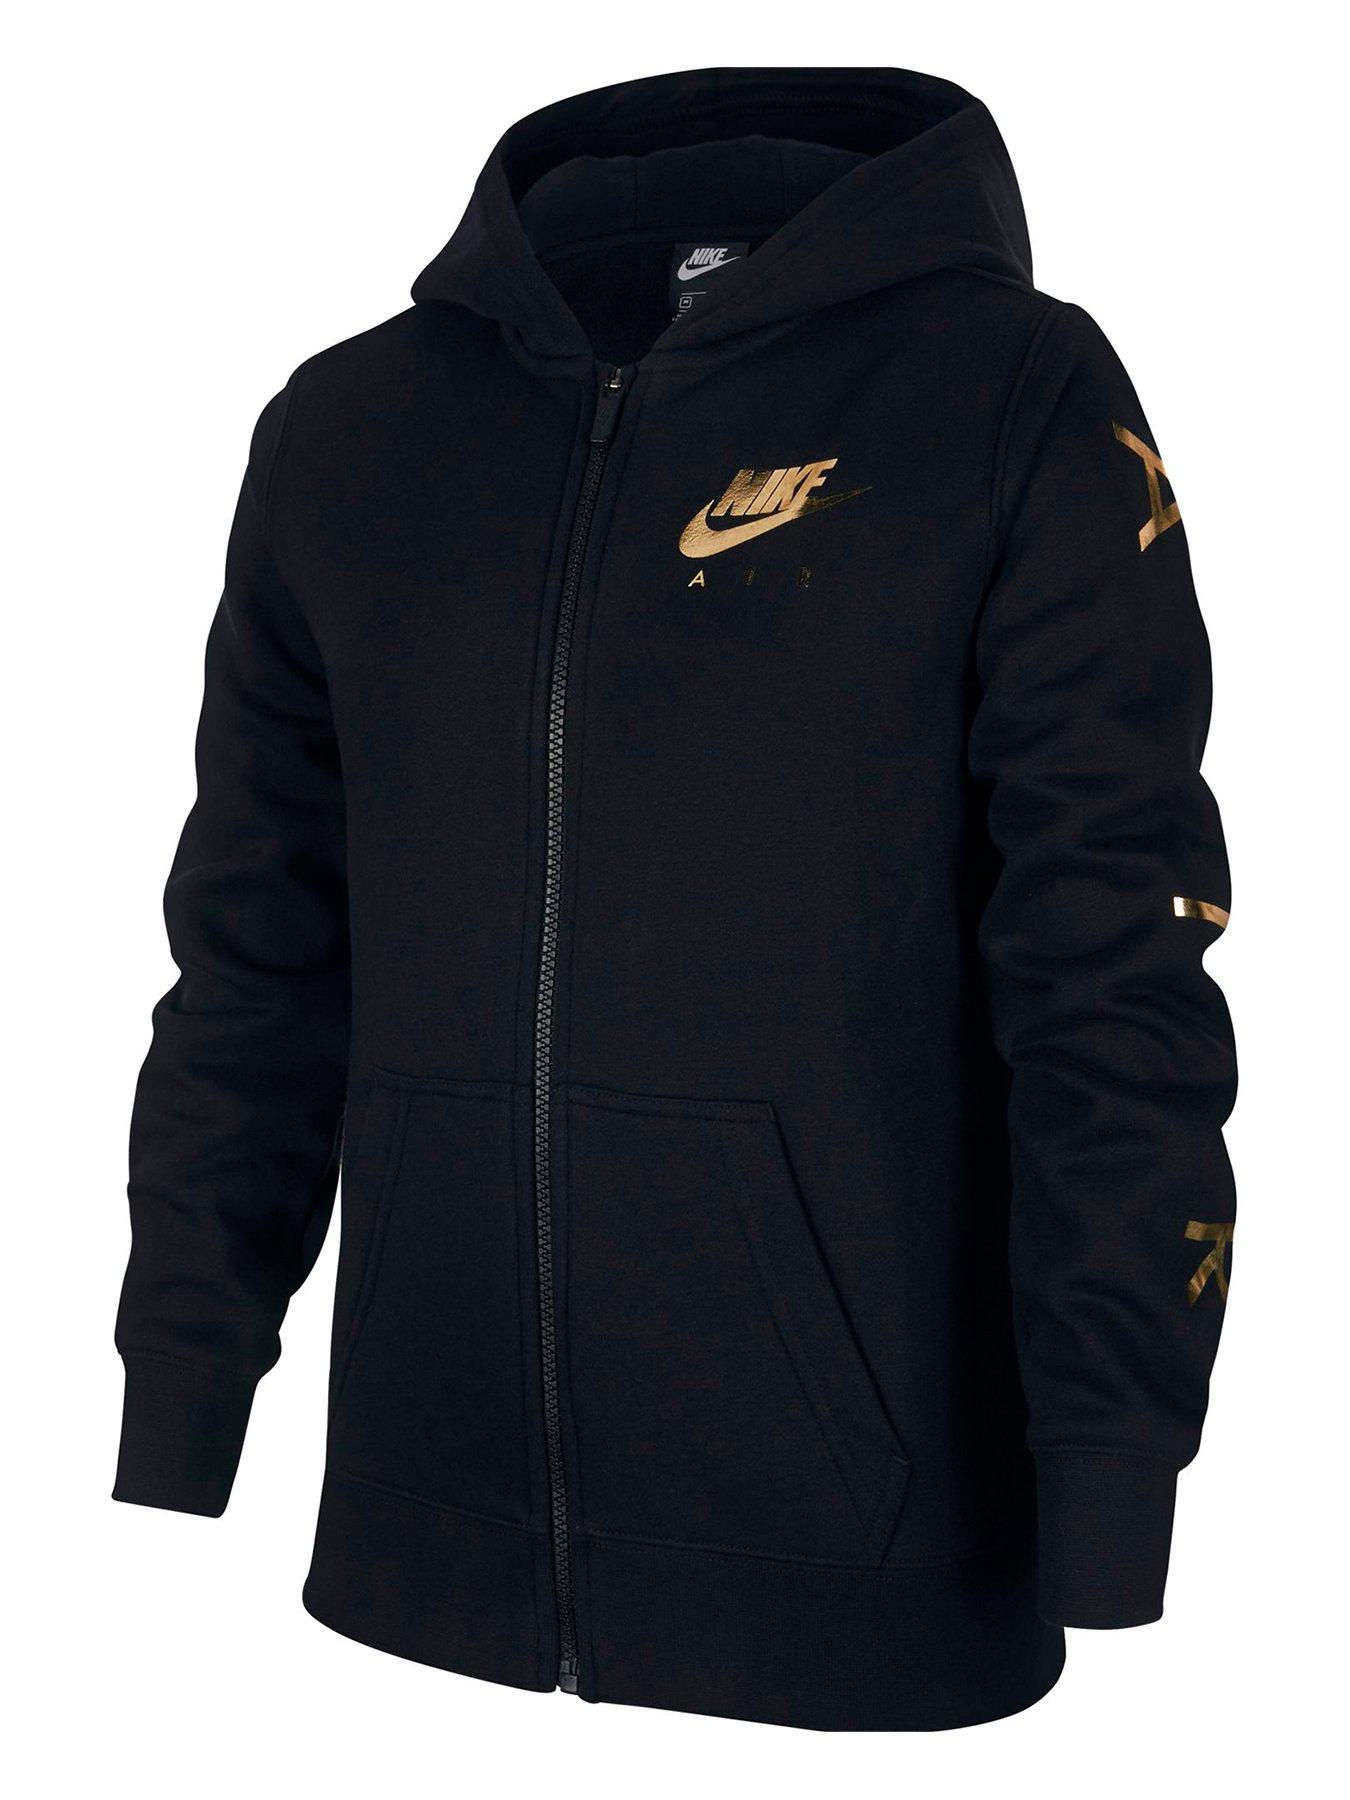 black and gold nike air hoodie